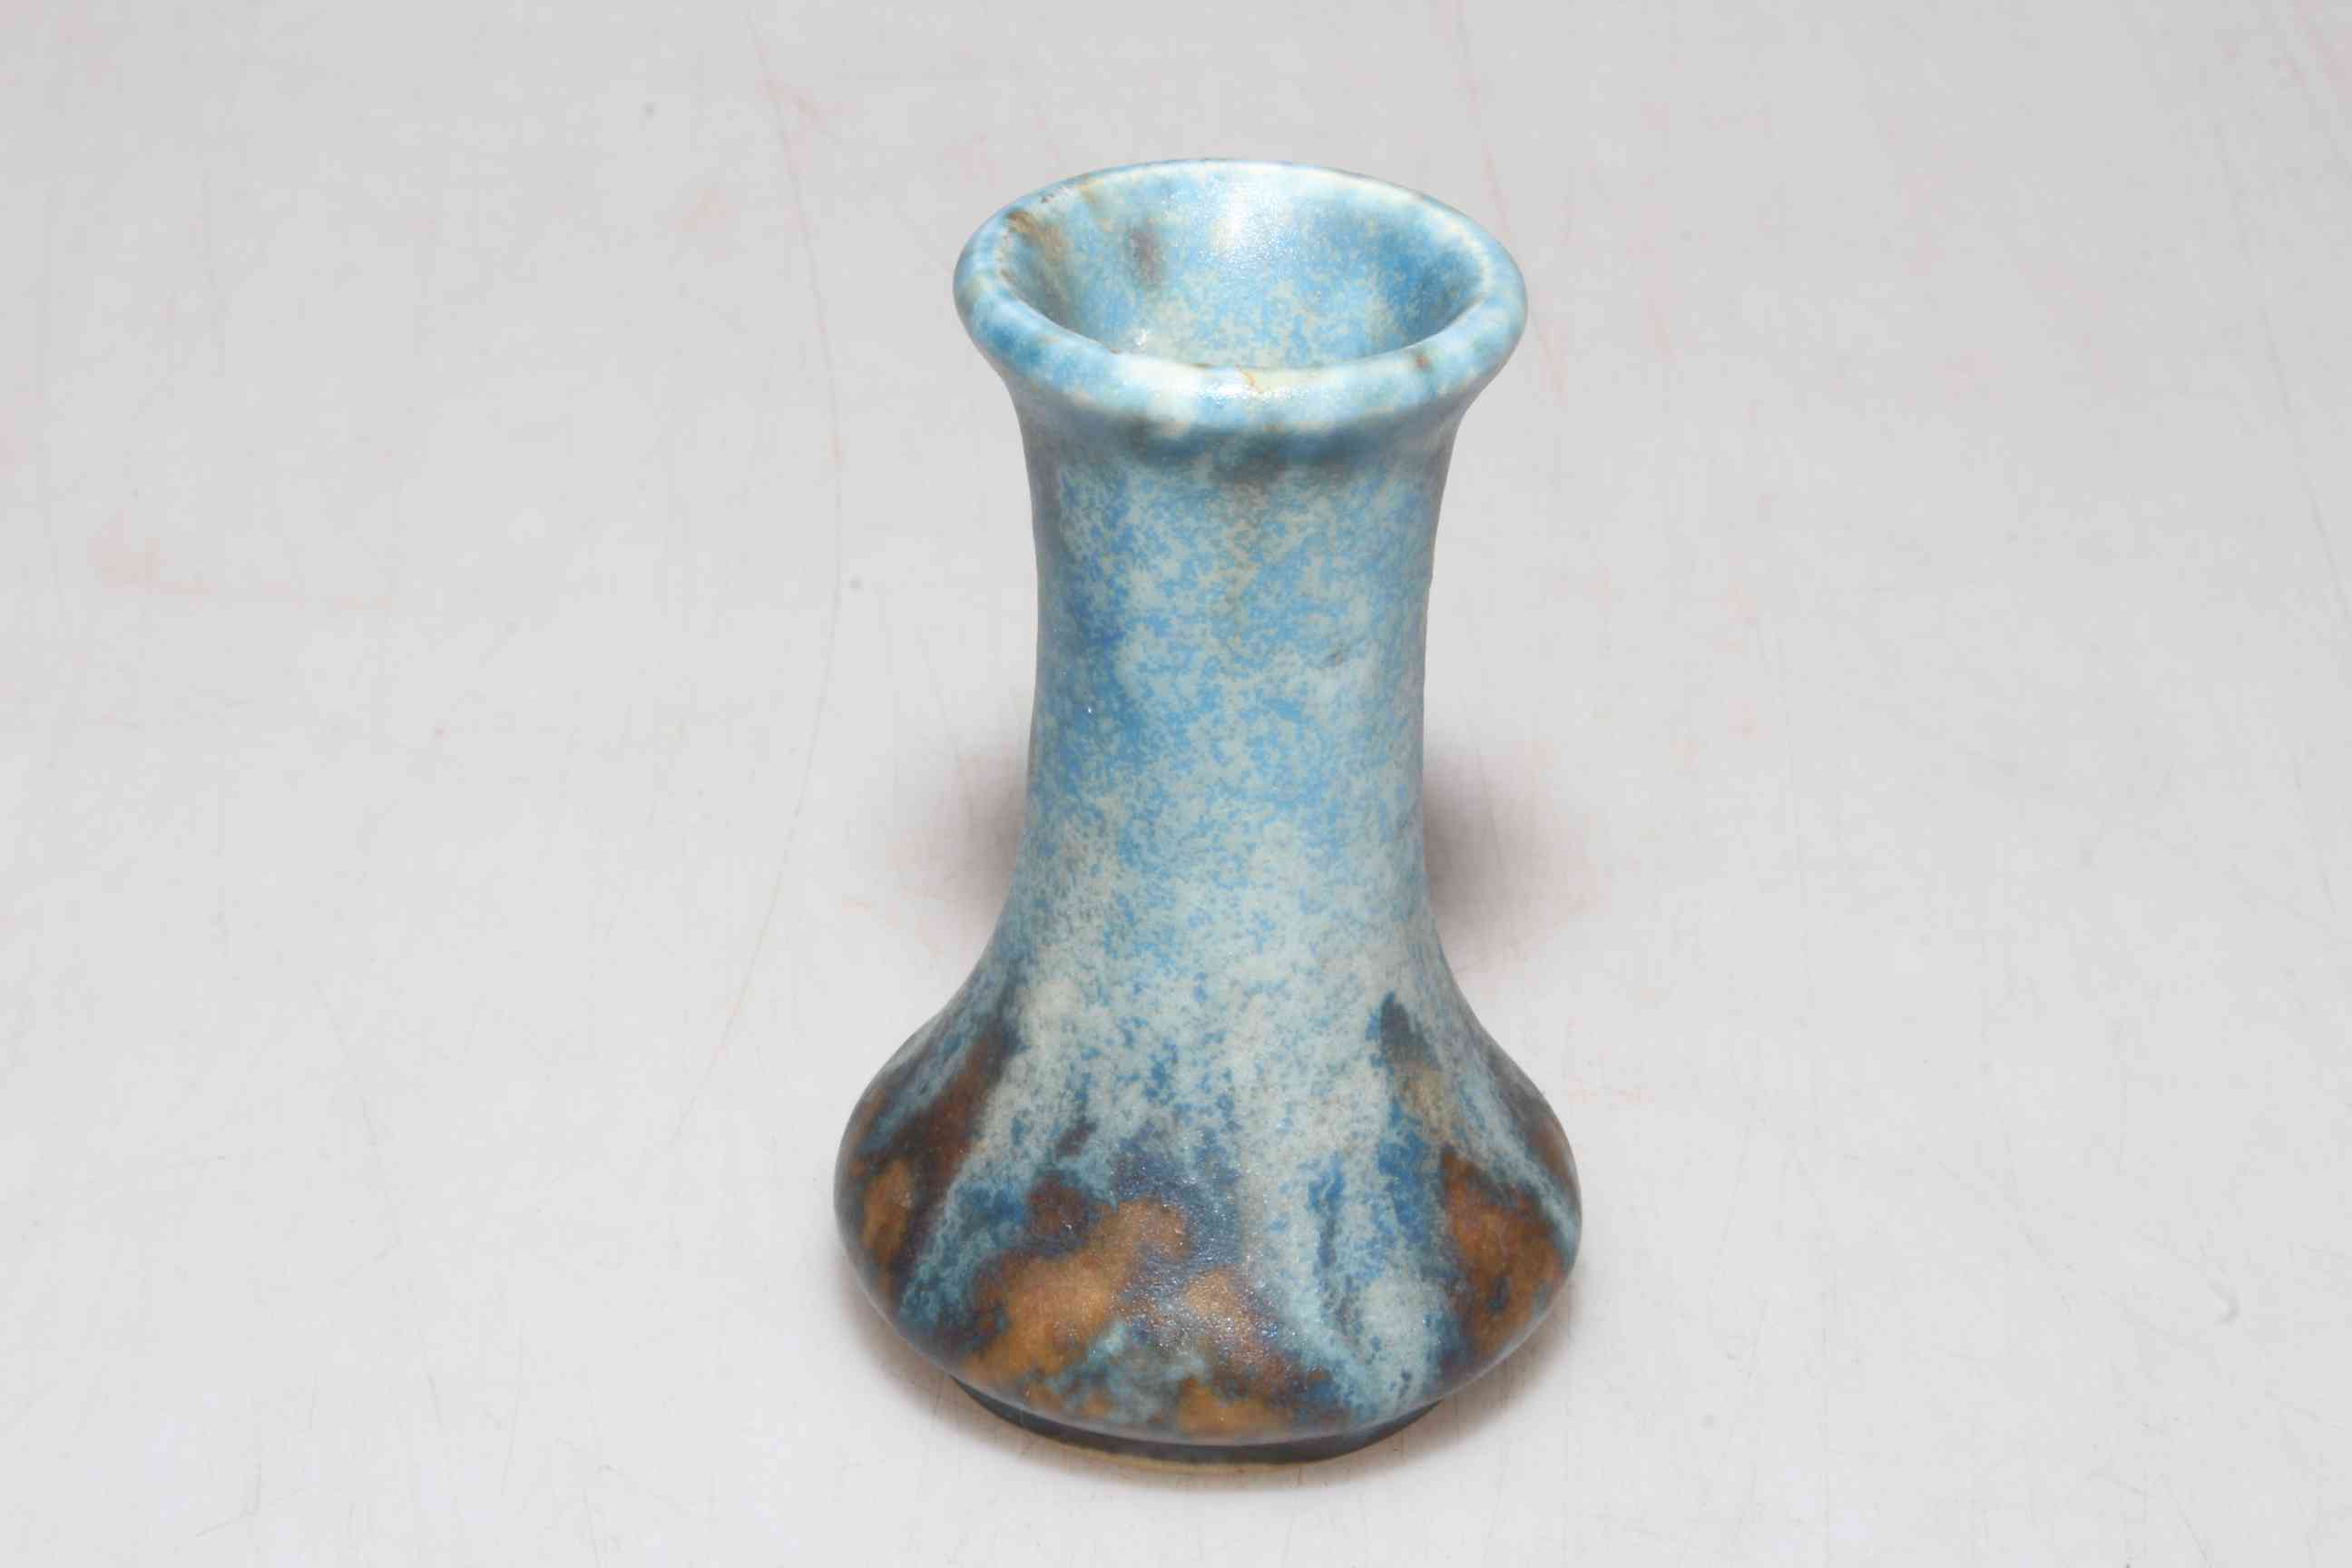 Miniature Ruskin Ware blue ground vase, 8cm high.